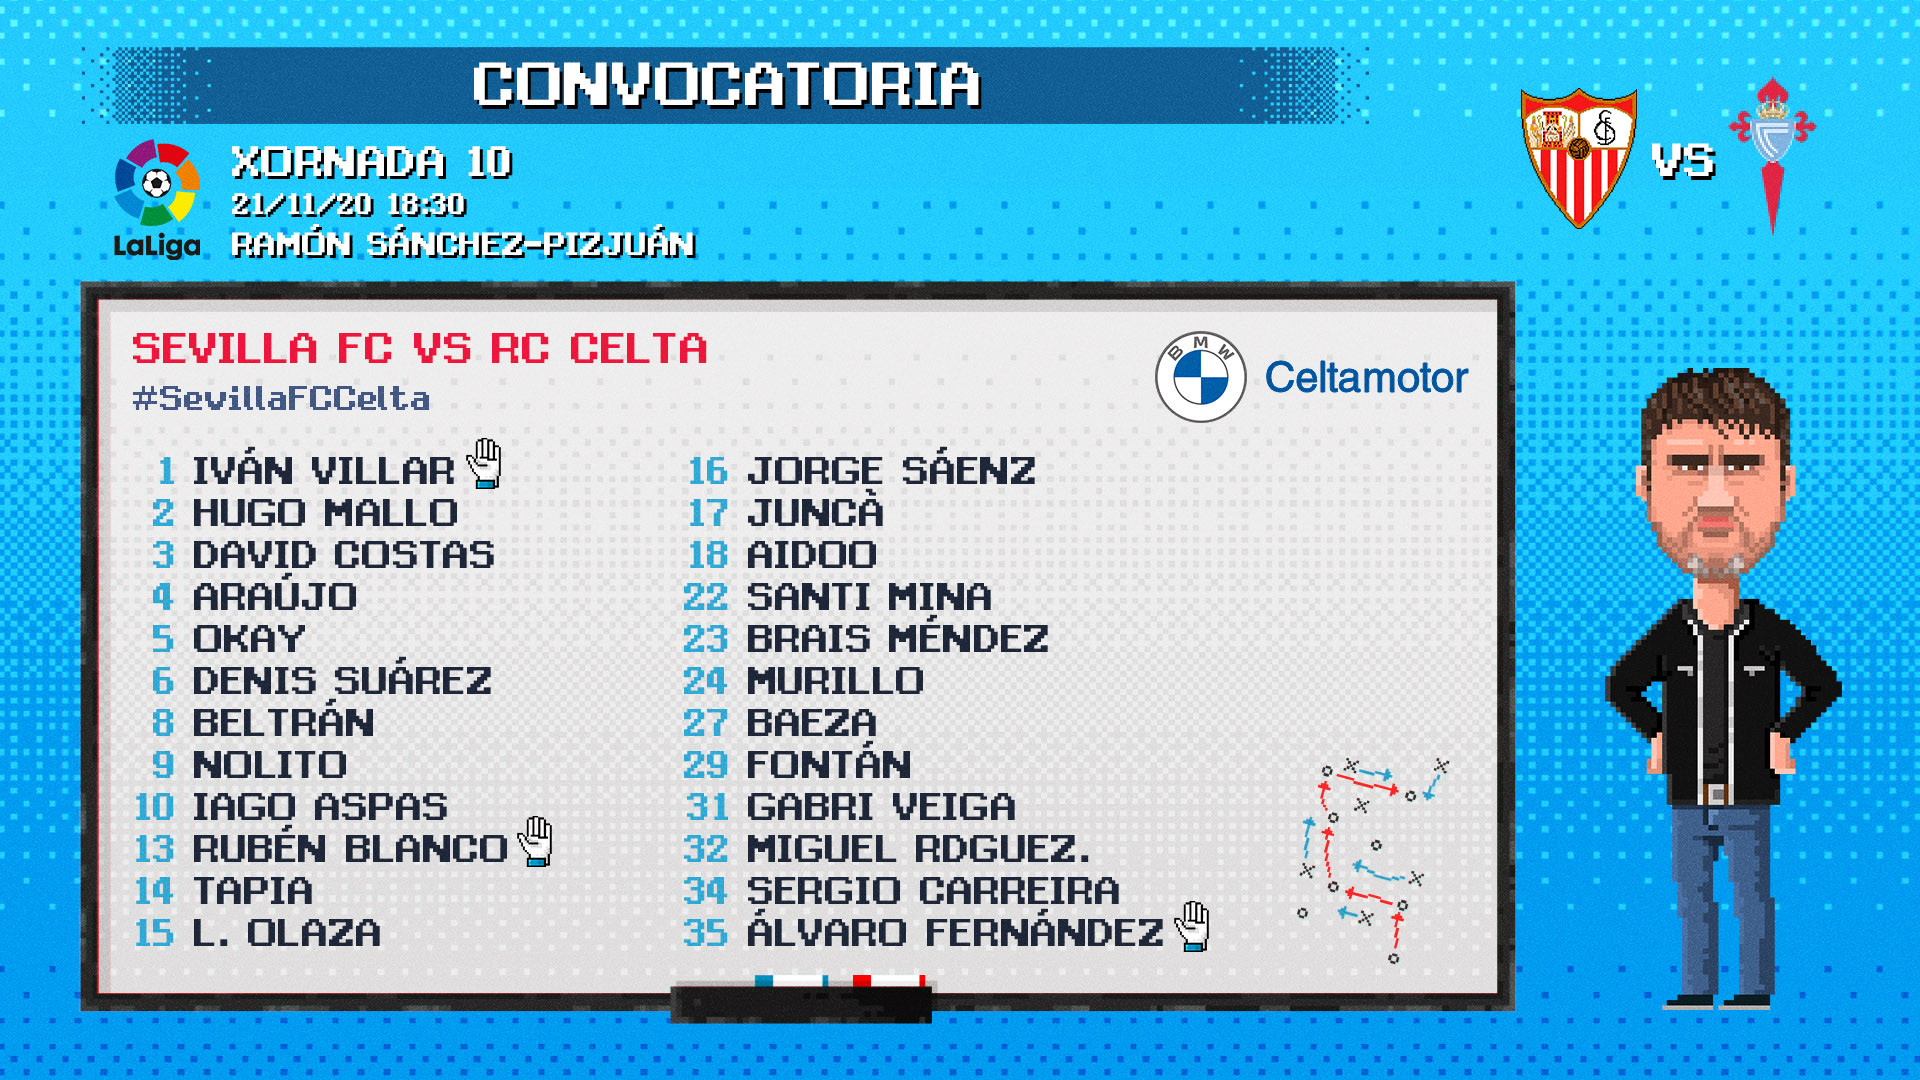 La convocatoria del Sevilla-Celta estrenó también el avatar de Coudet. Fuente: RC Celta